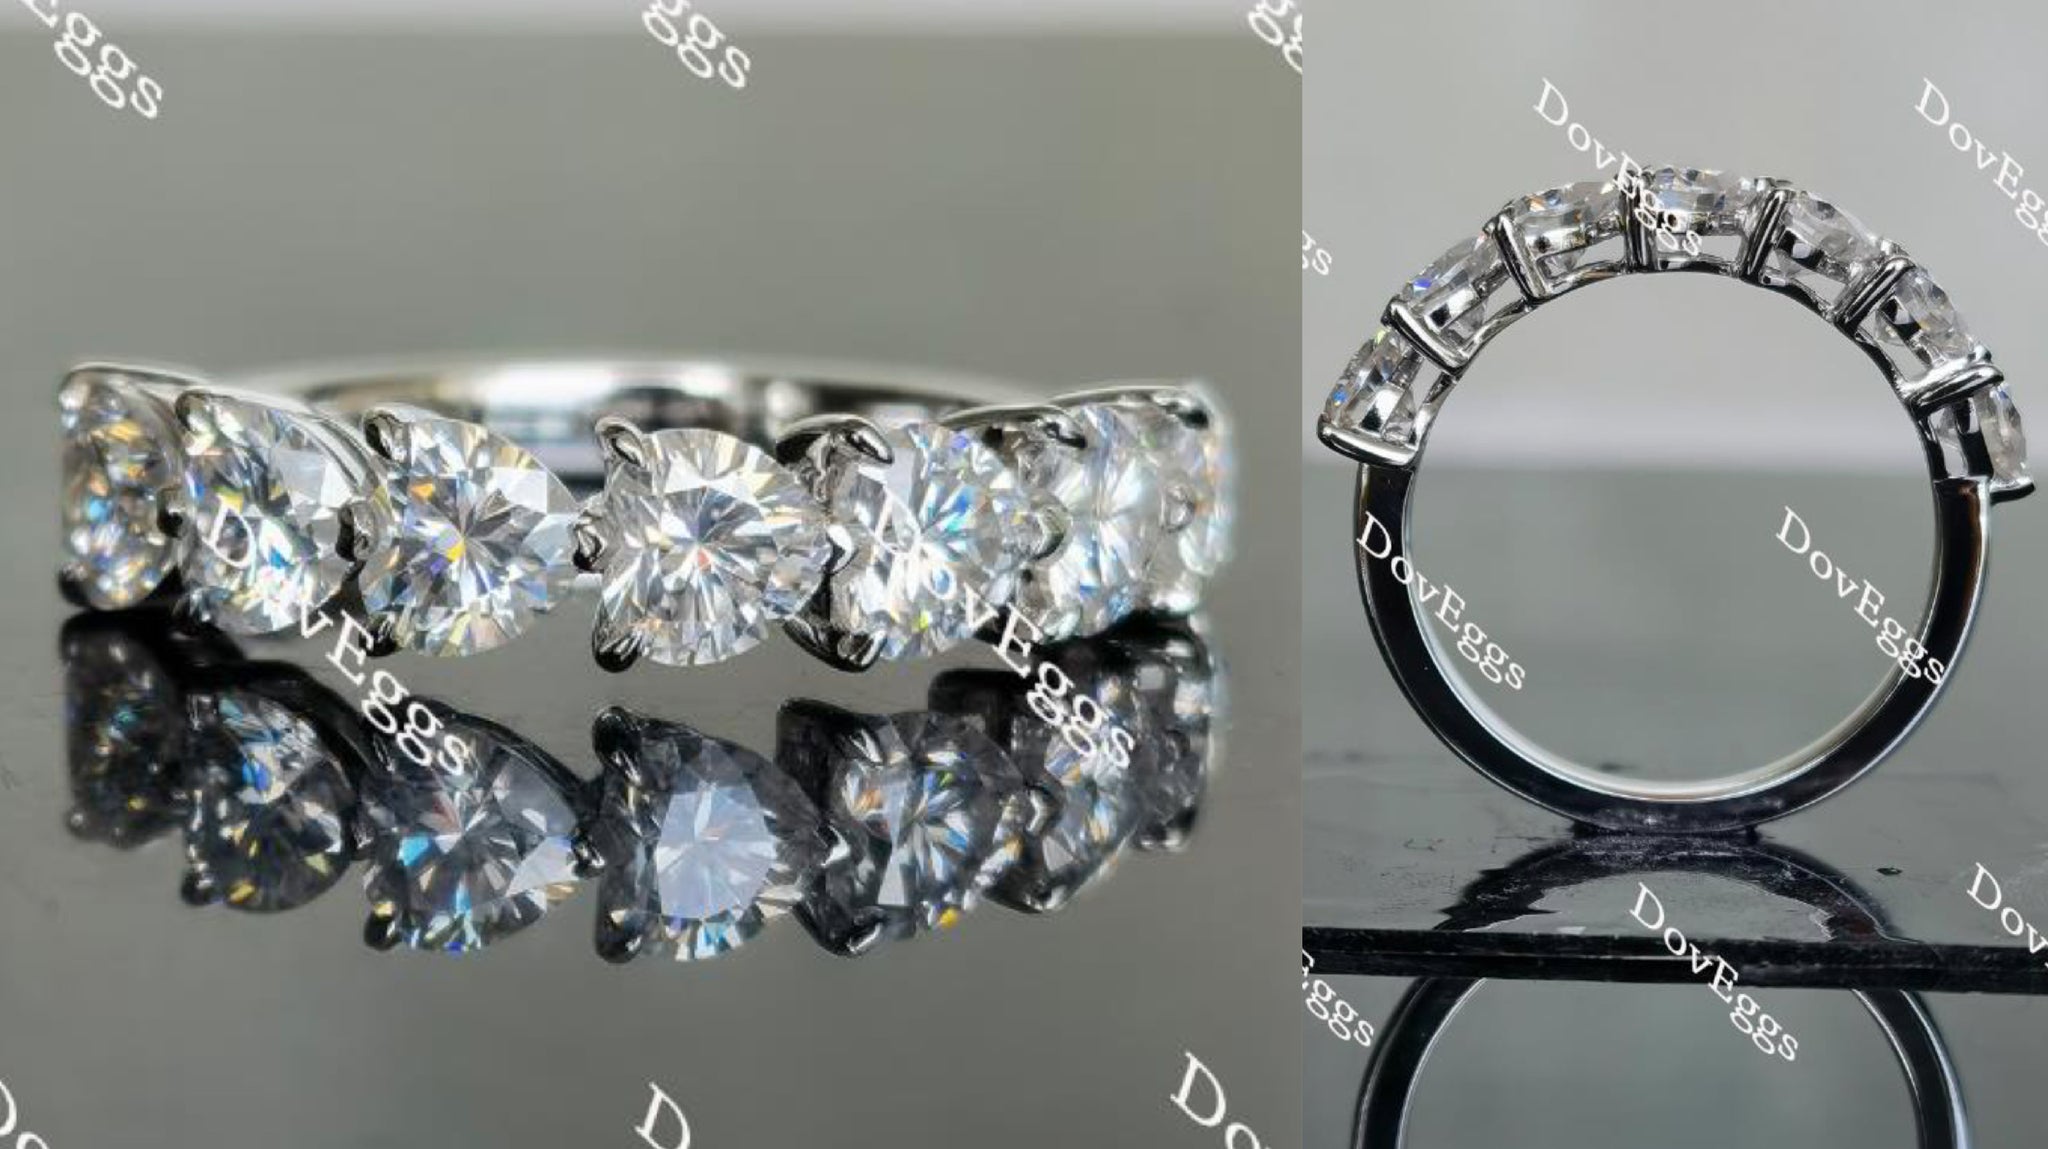 Doveggs heart seven stone moissanite ring/moissanite wedding band-2.5mm band width